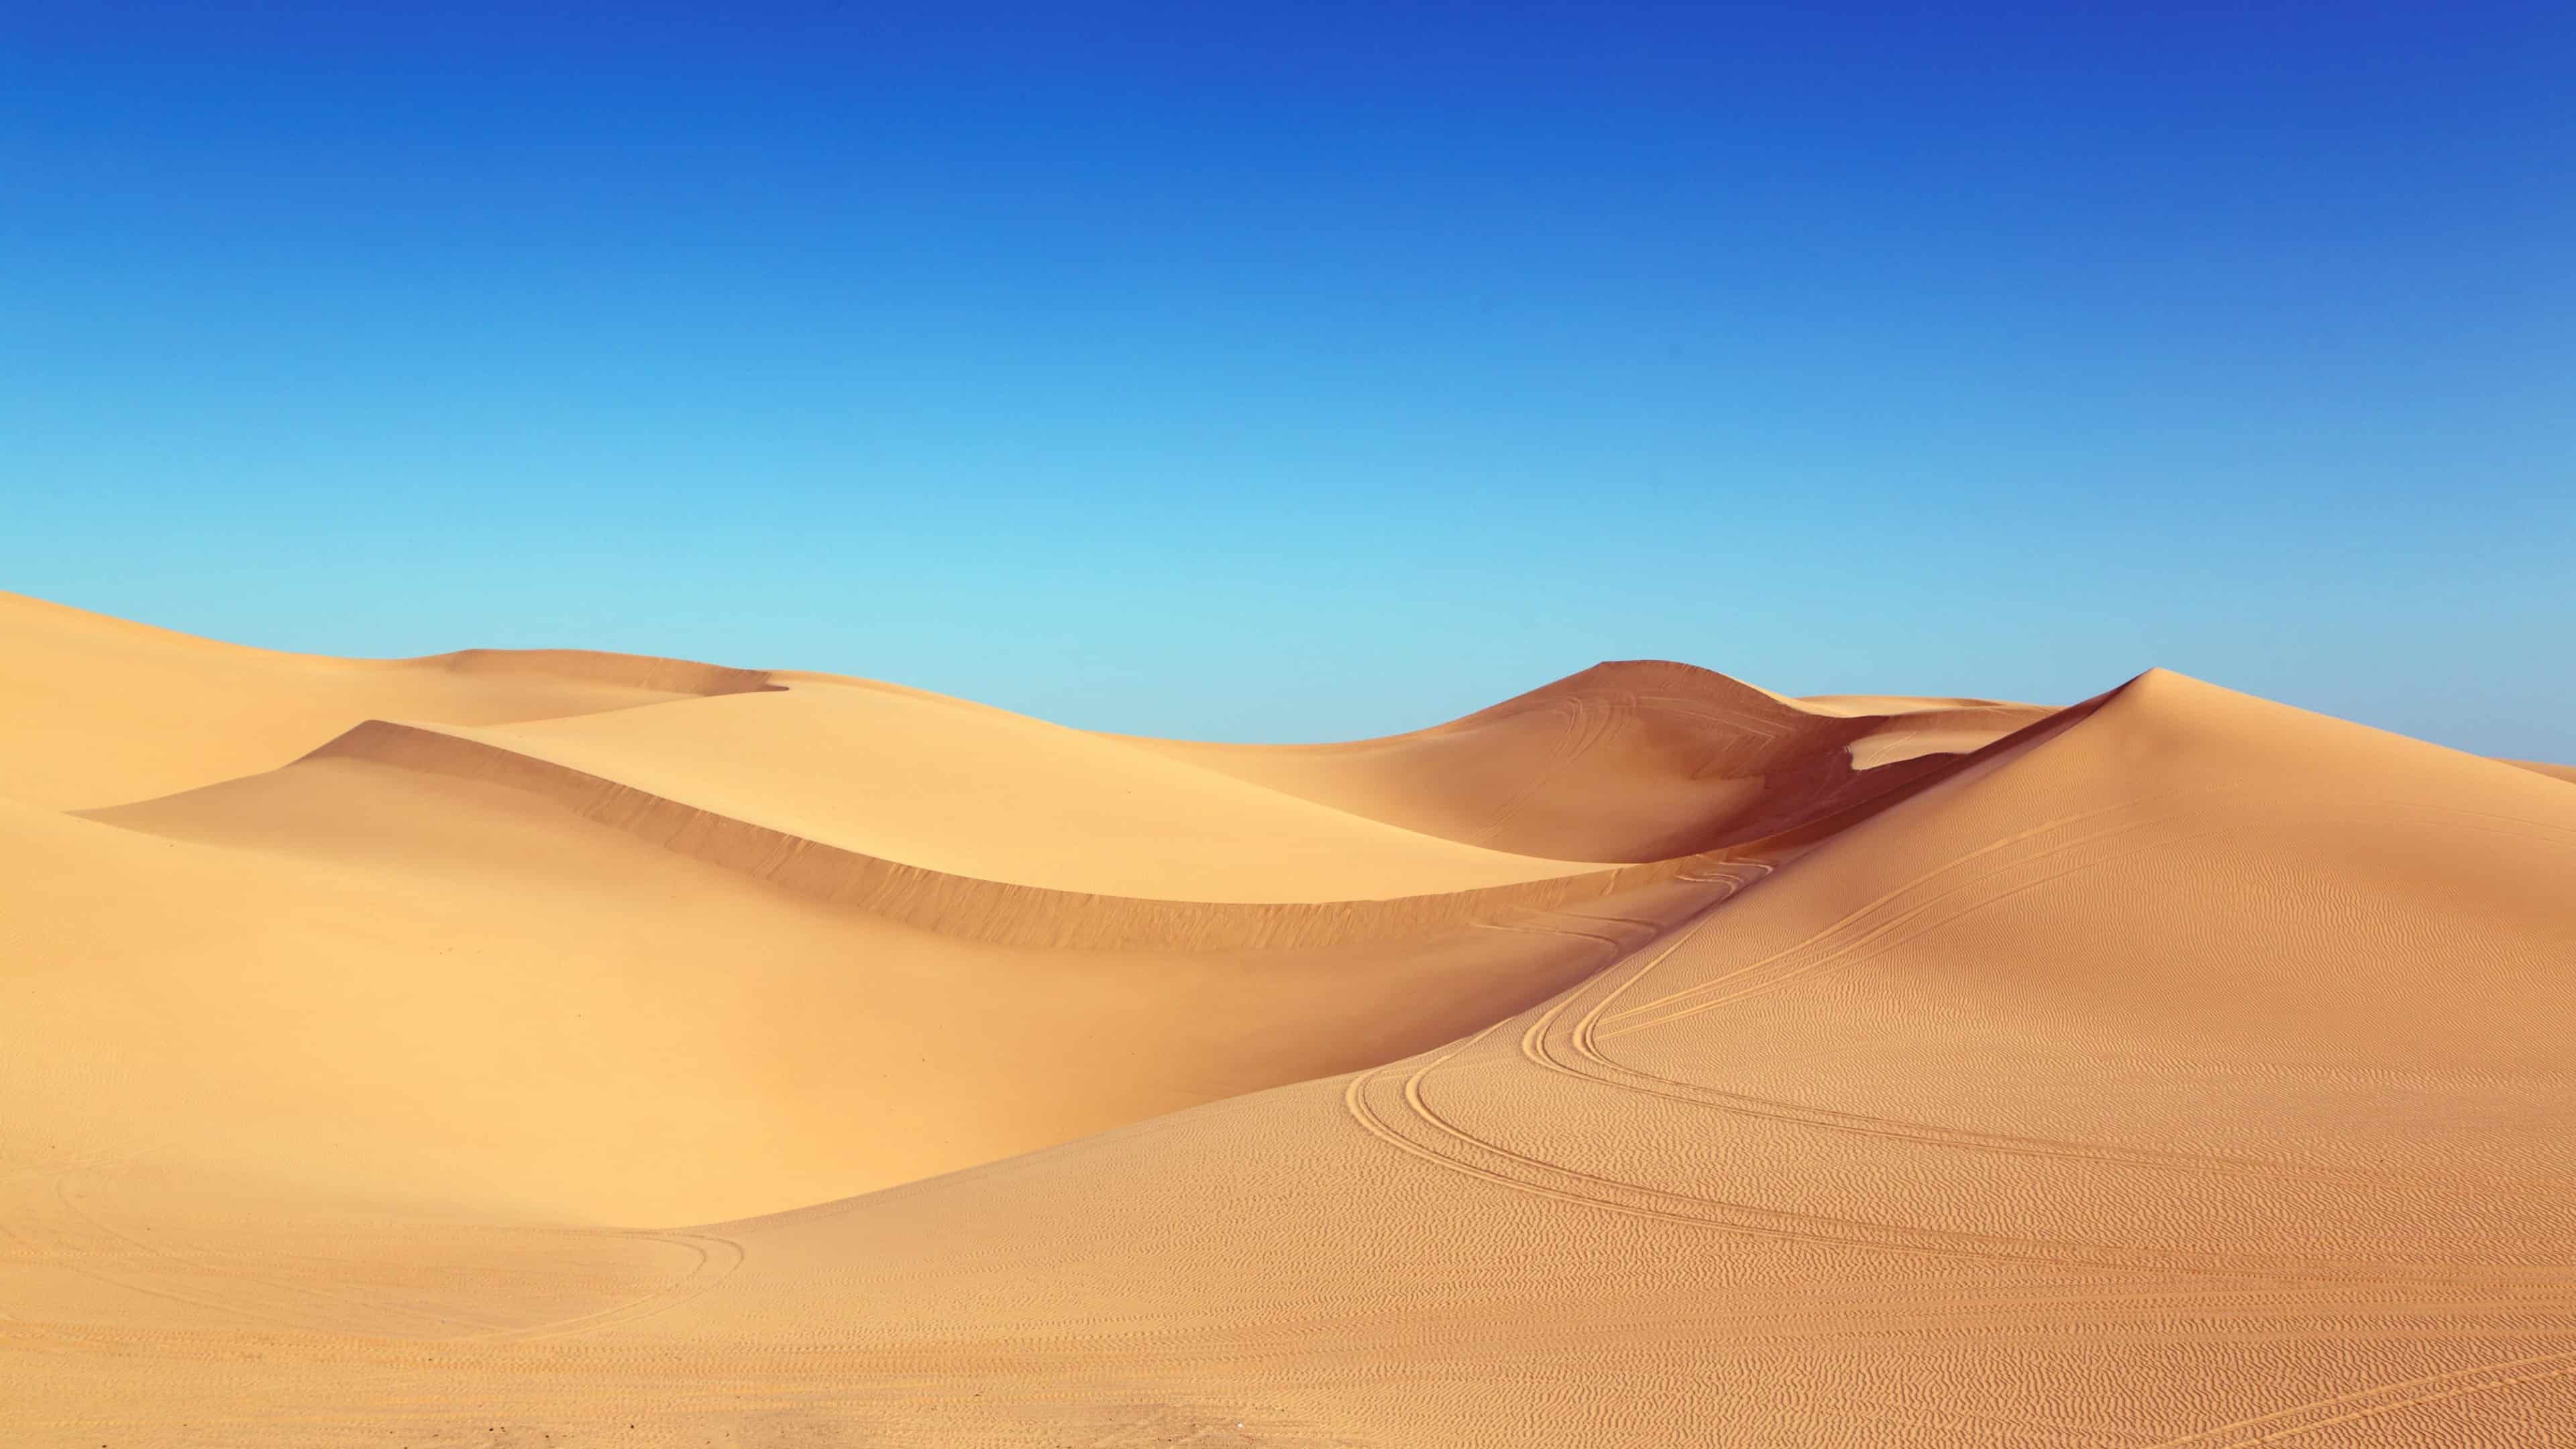 4K Desert Wallpapers   Top Free 4K Desert Backgrounds